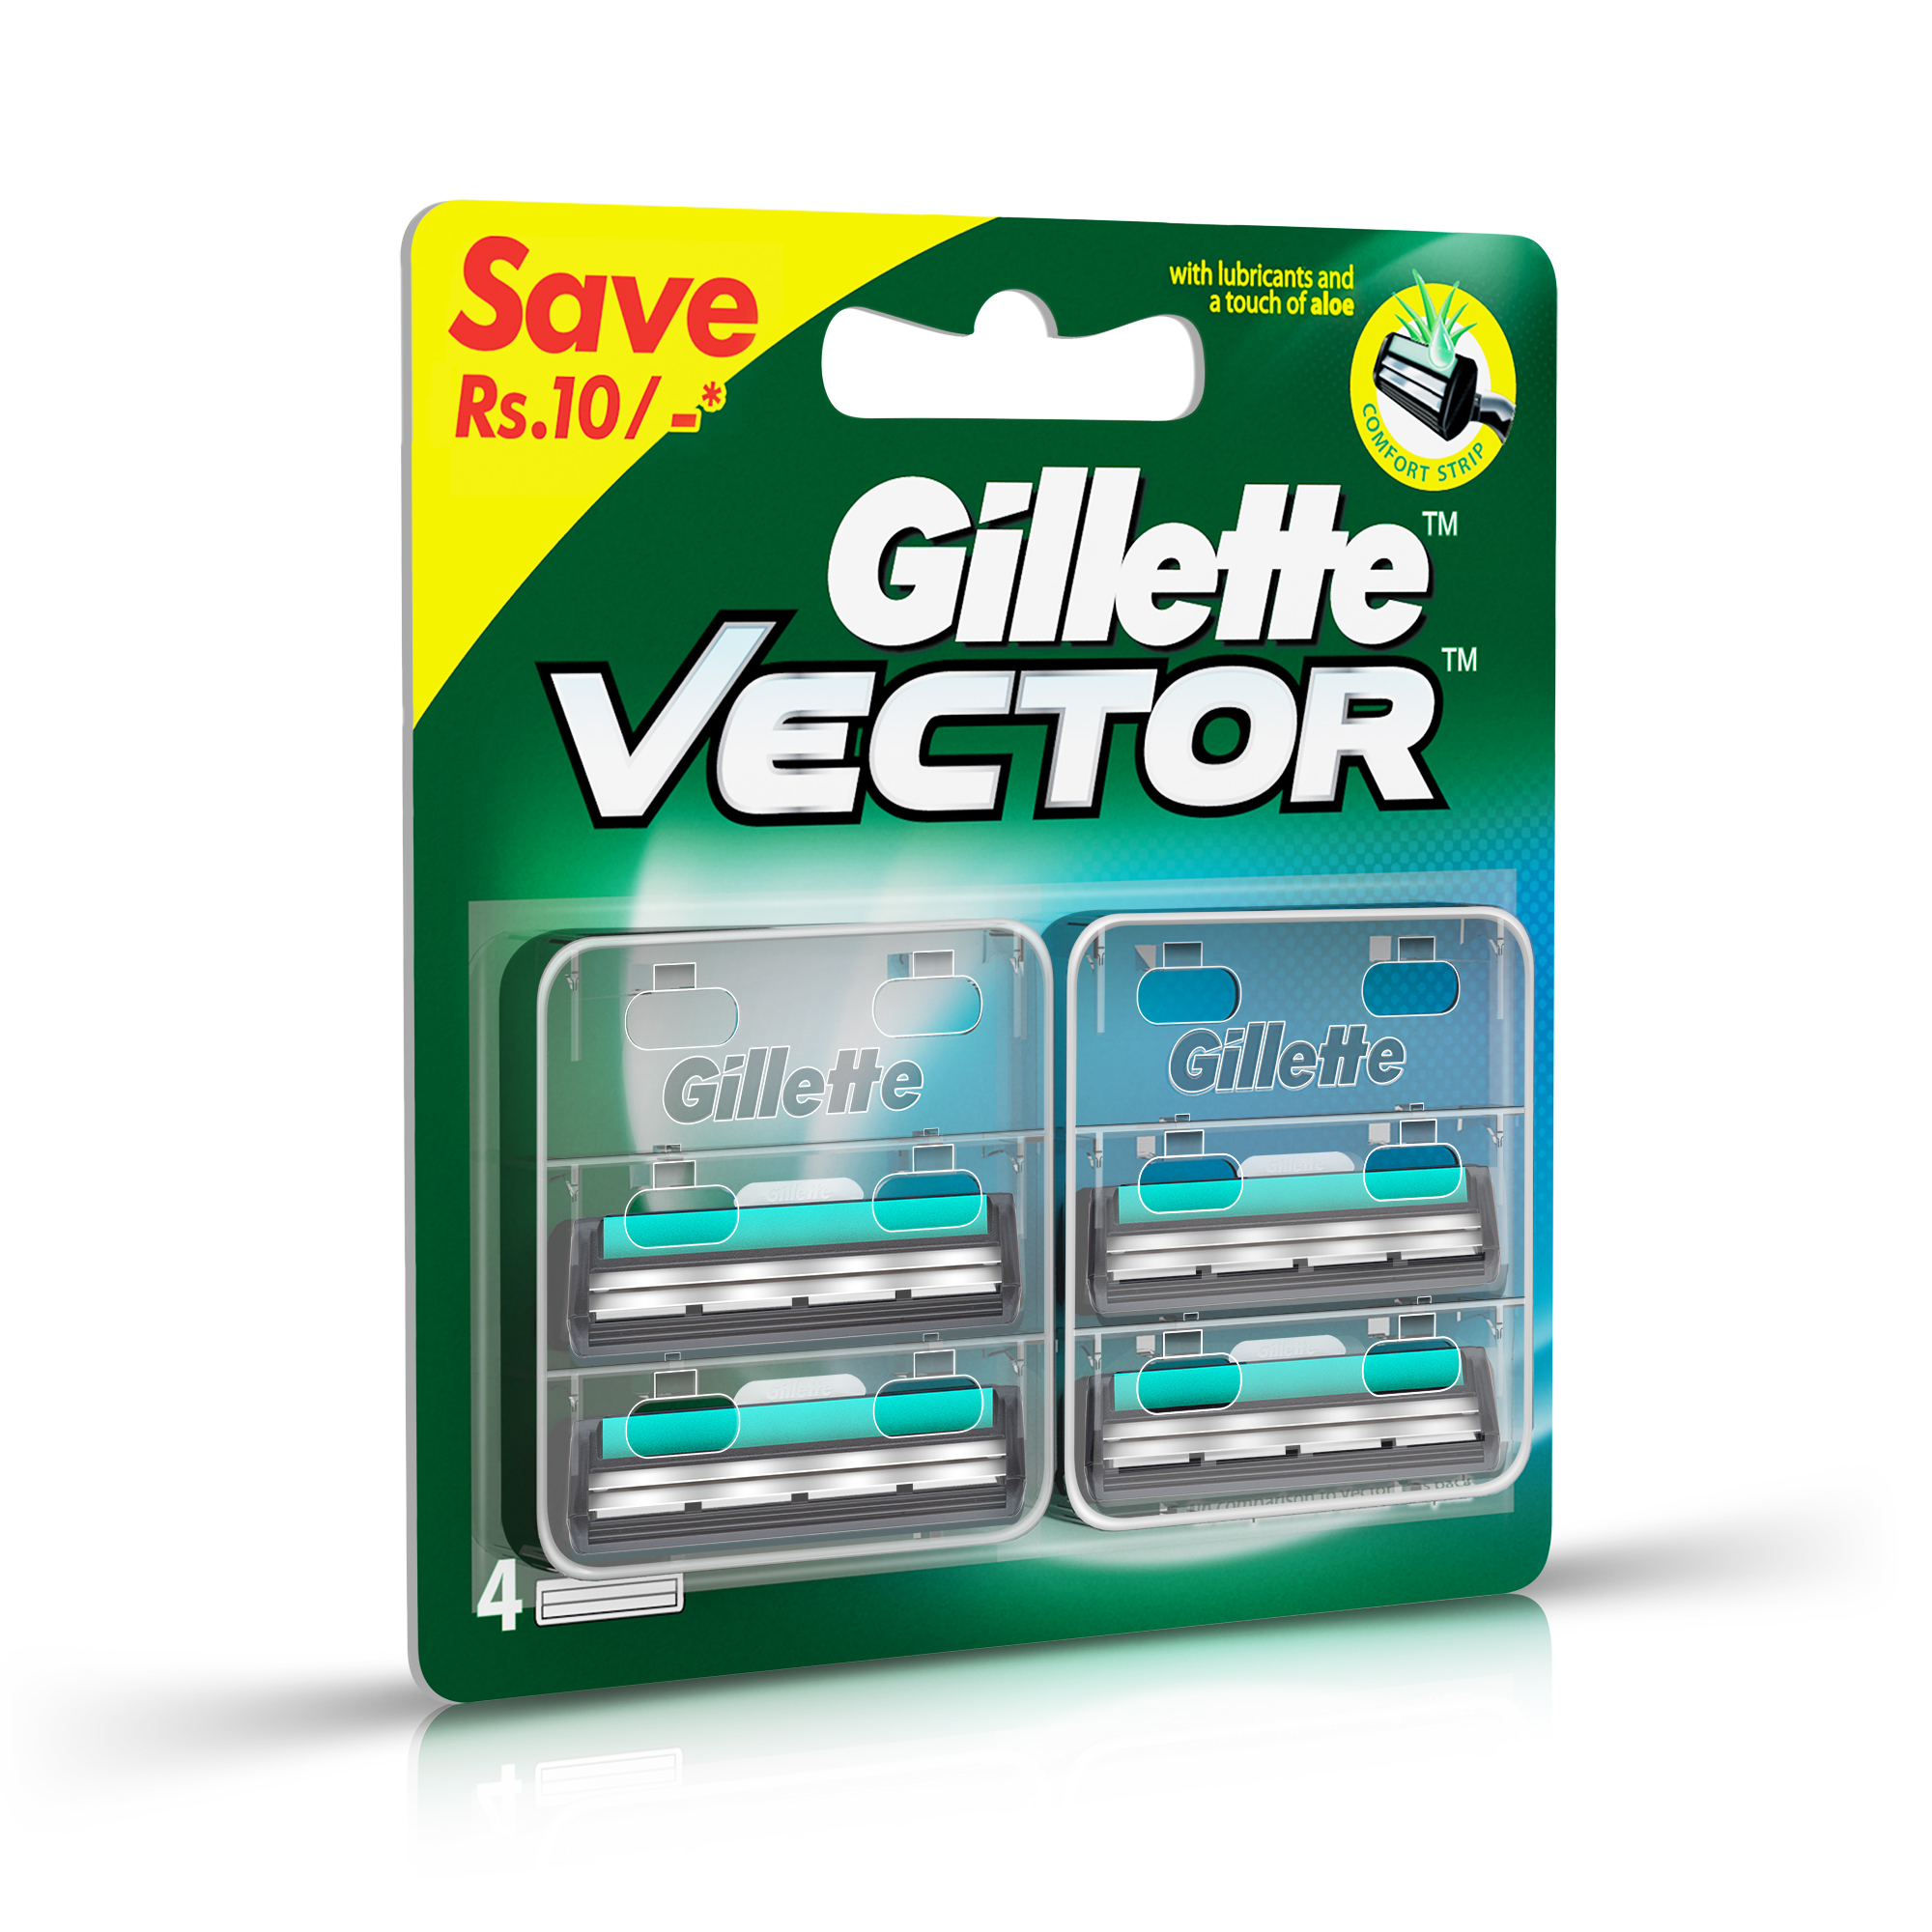 Gillette Vector Shaving Best Wishes Gift Pack